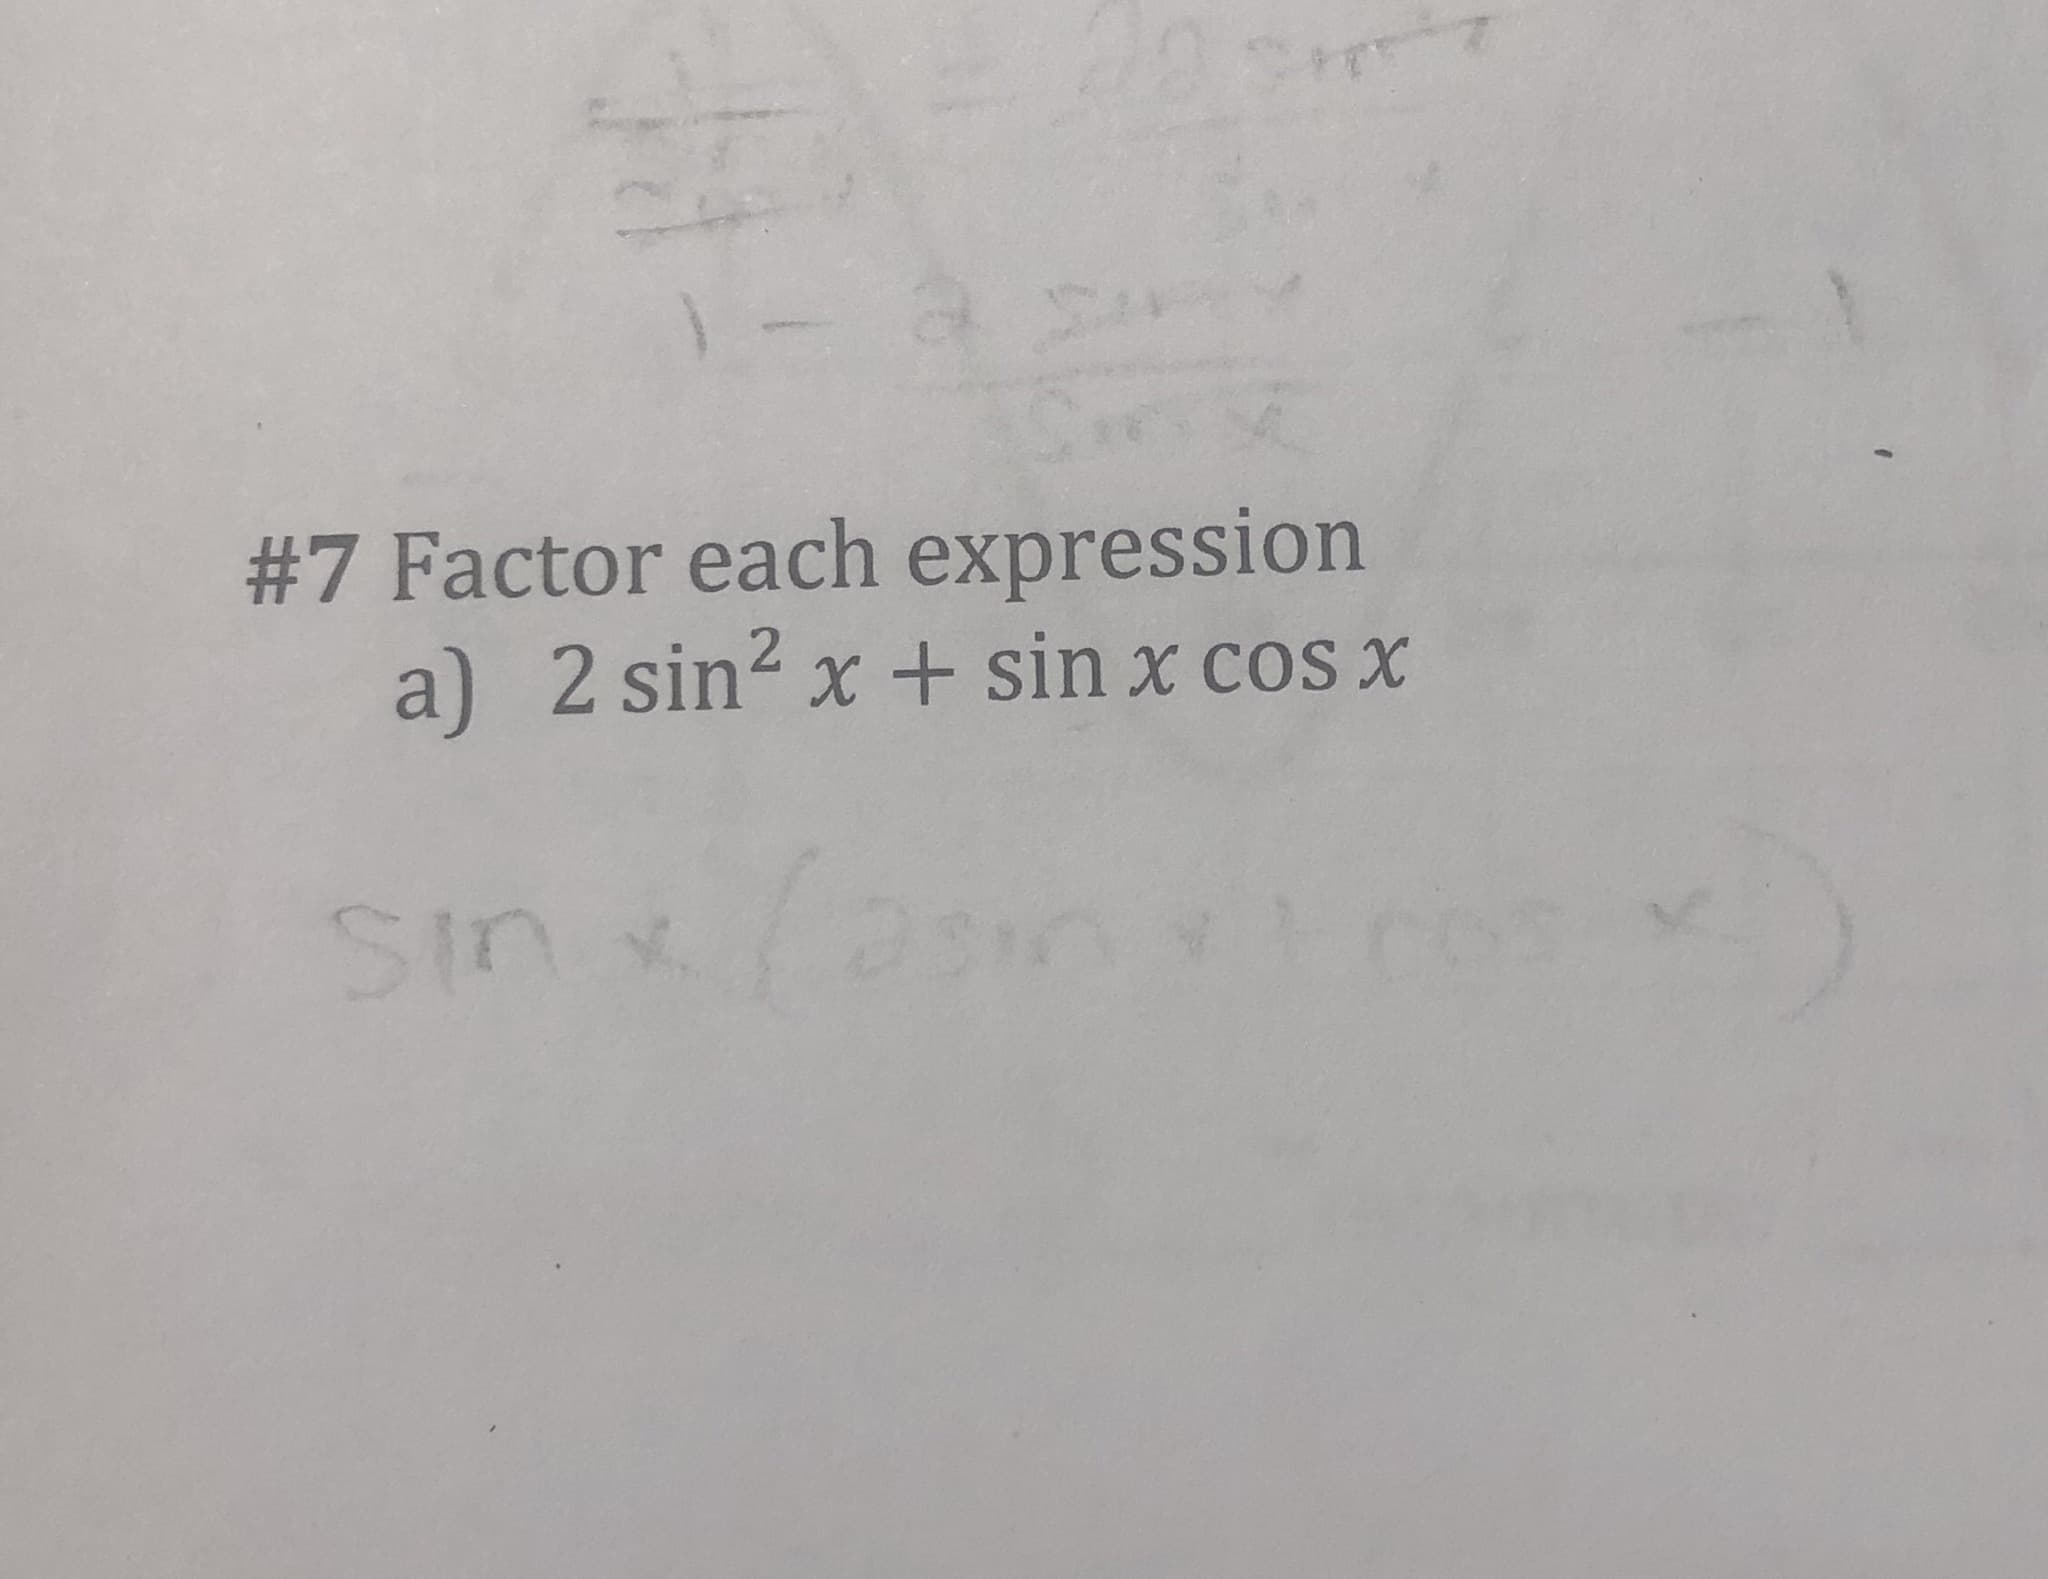 #7 Factor each expression
a) 2 sin2 x + sin x cos x
Sin
